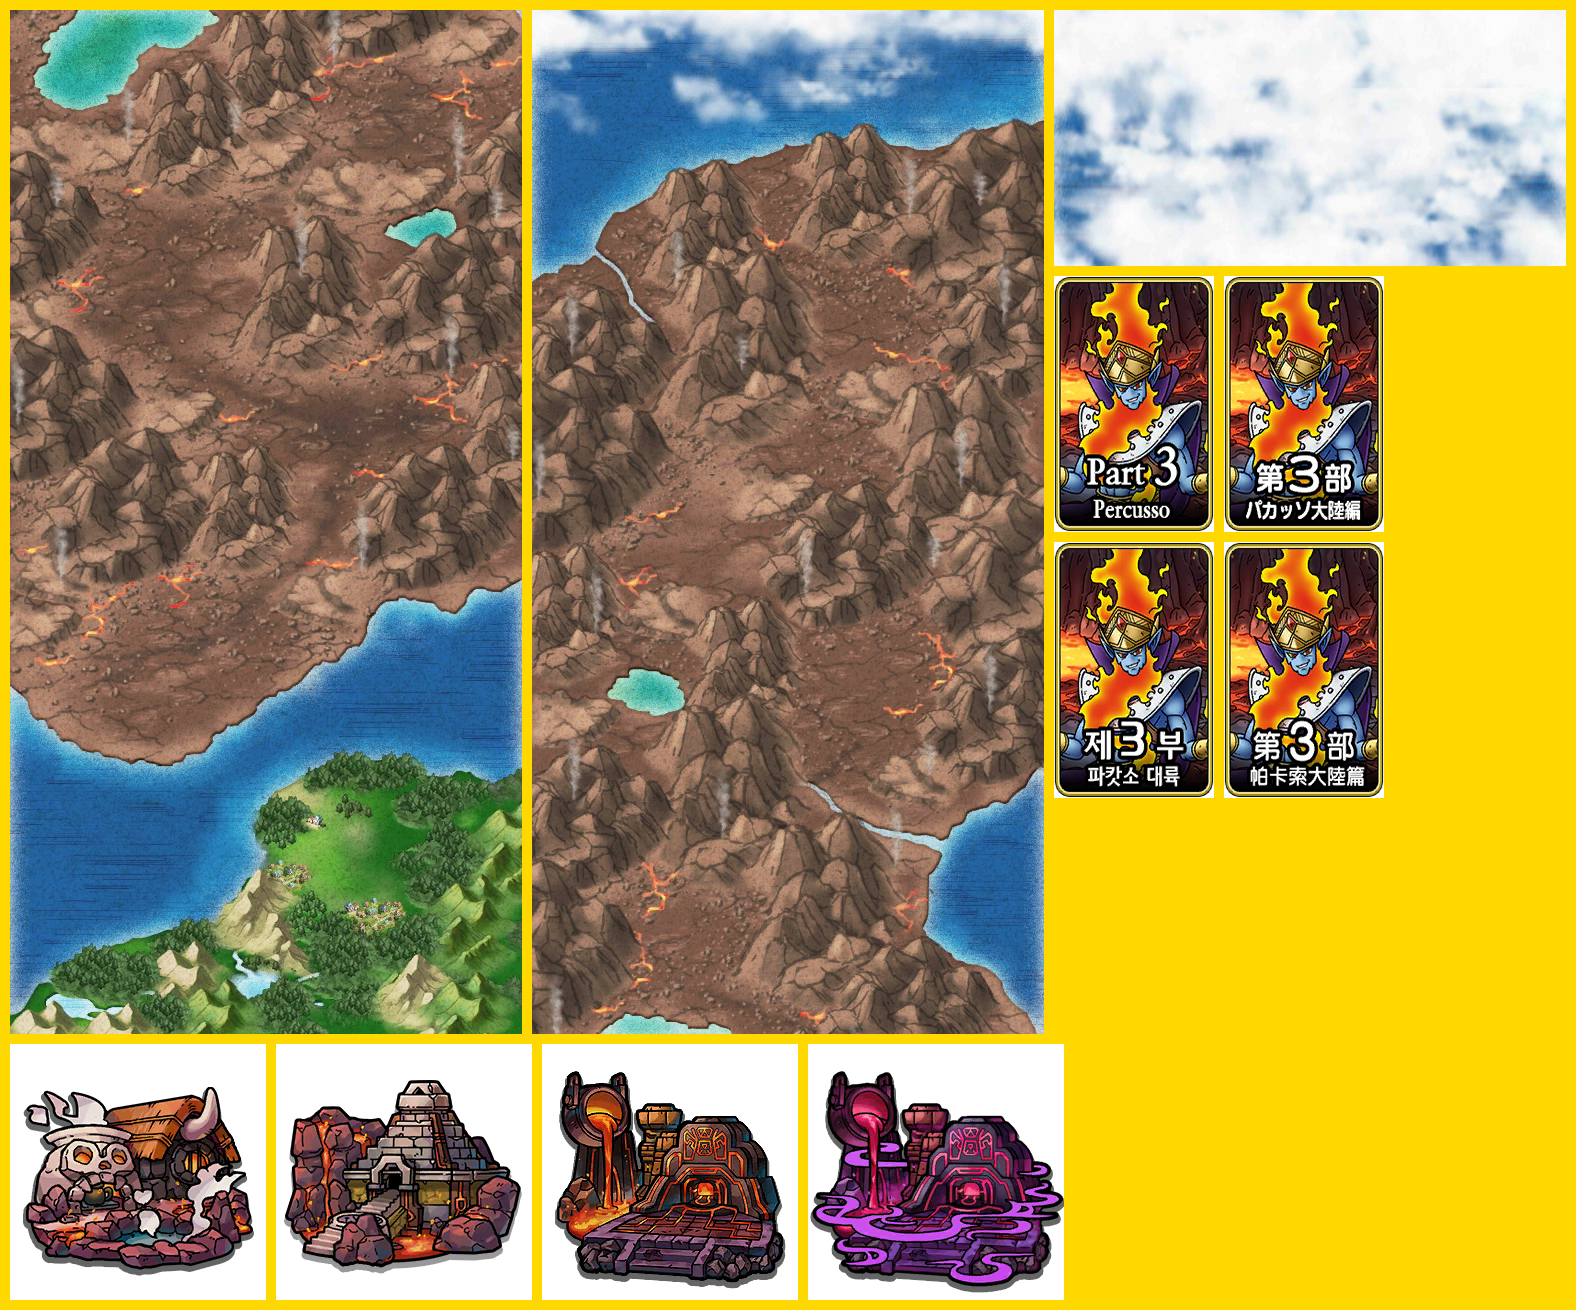 Dragon Quest Tact - Part 3 (Percusso)